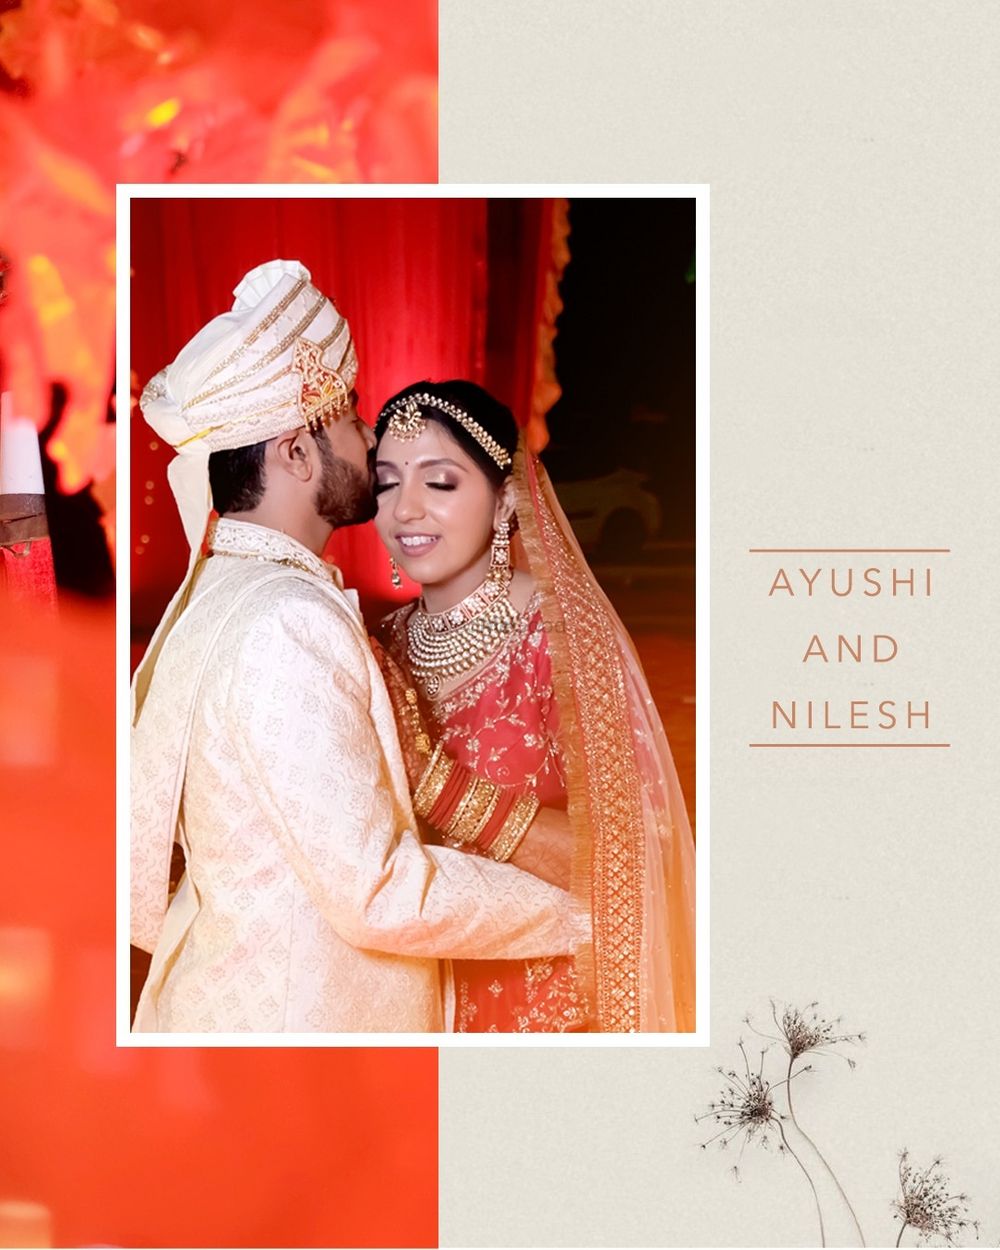 Photo From Ayushi & Nilesh #Wedlock - By LensKing Photography